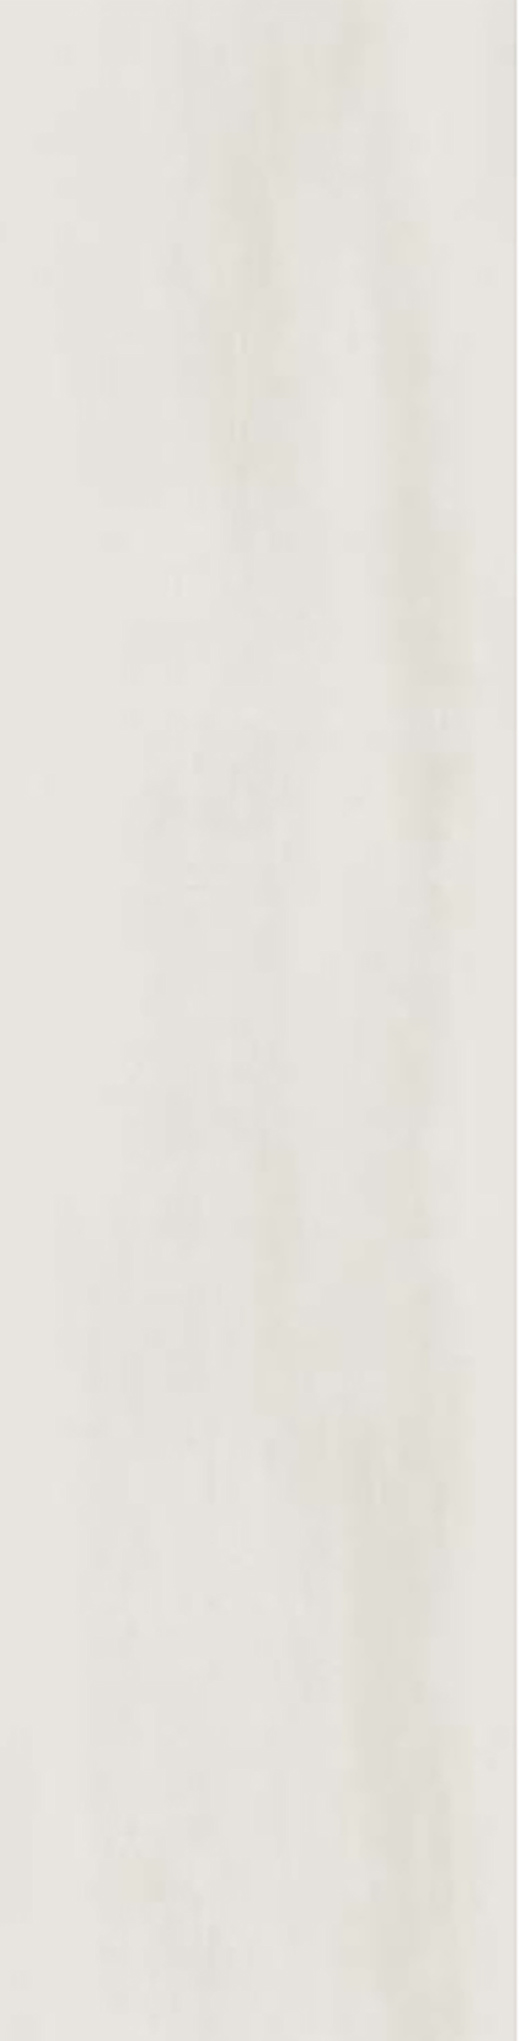 Resplendent Bianco Dolomite Polished 3"x12 | Color Body Porcelain | Floor/Wall Tile